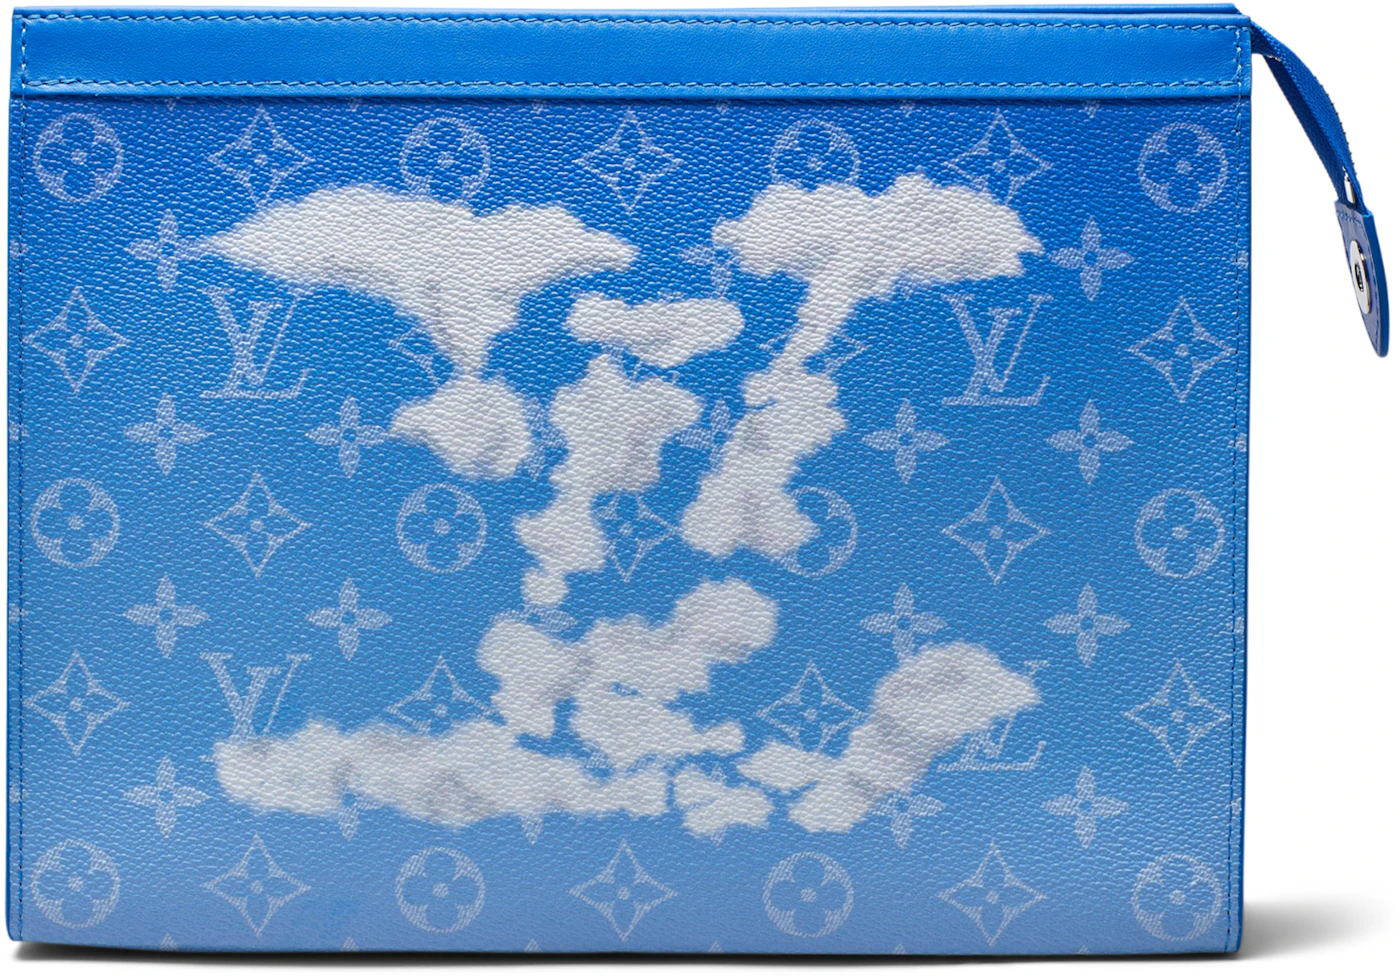 Louis Vuitton x Virgil Abloh Clouds Monogram Windbreaker for Sale